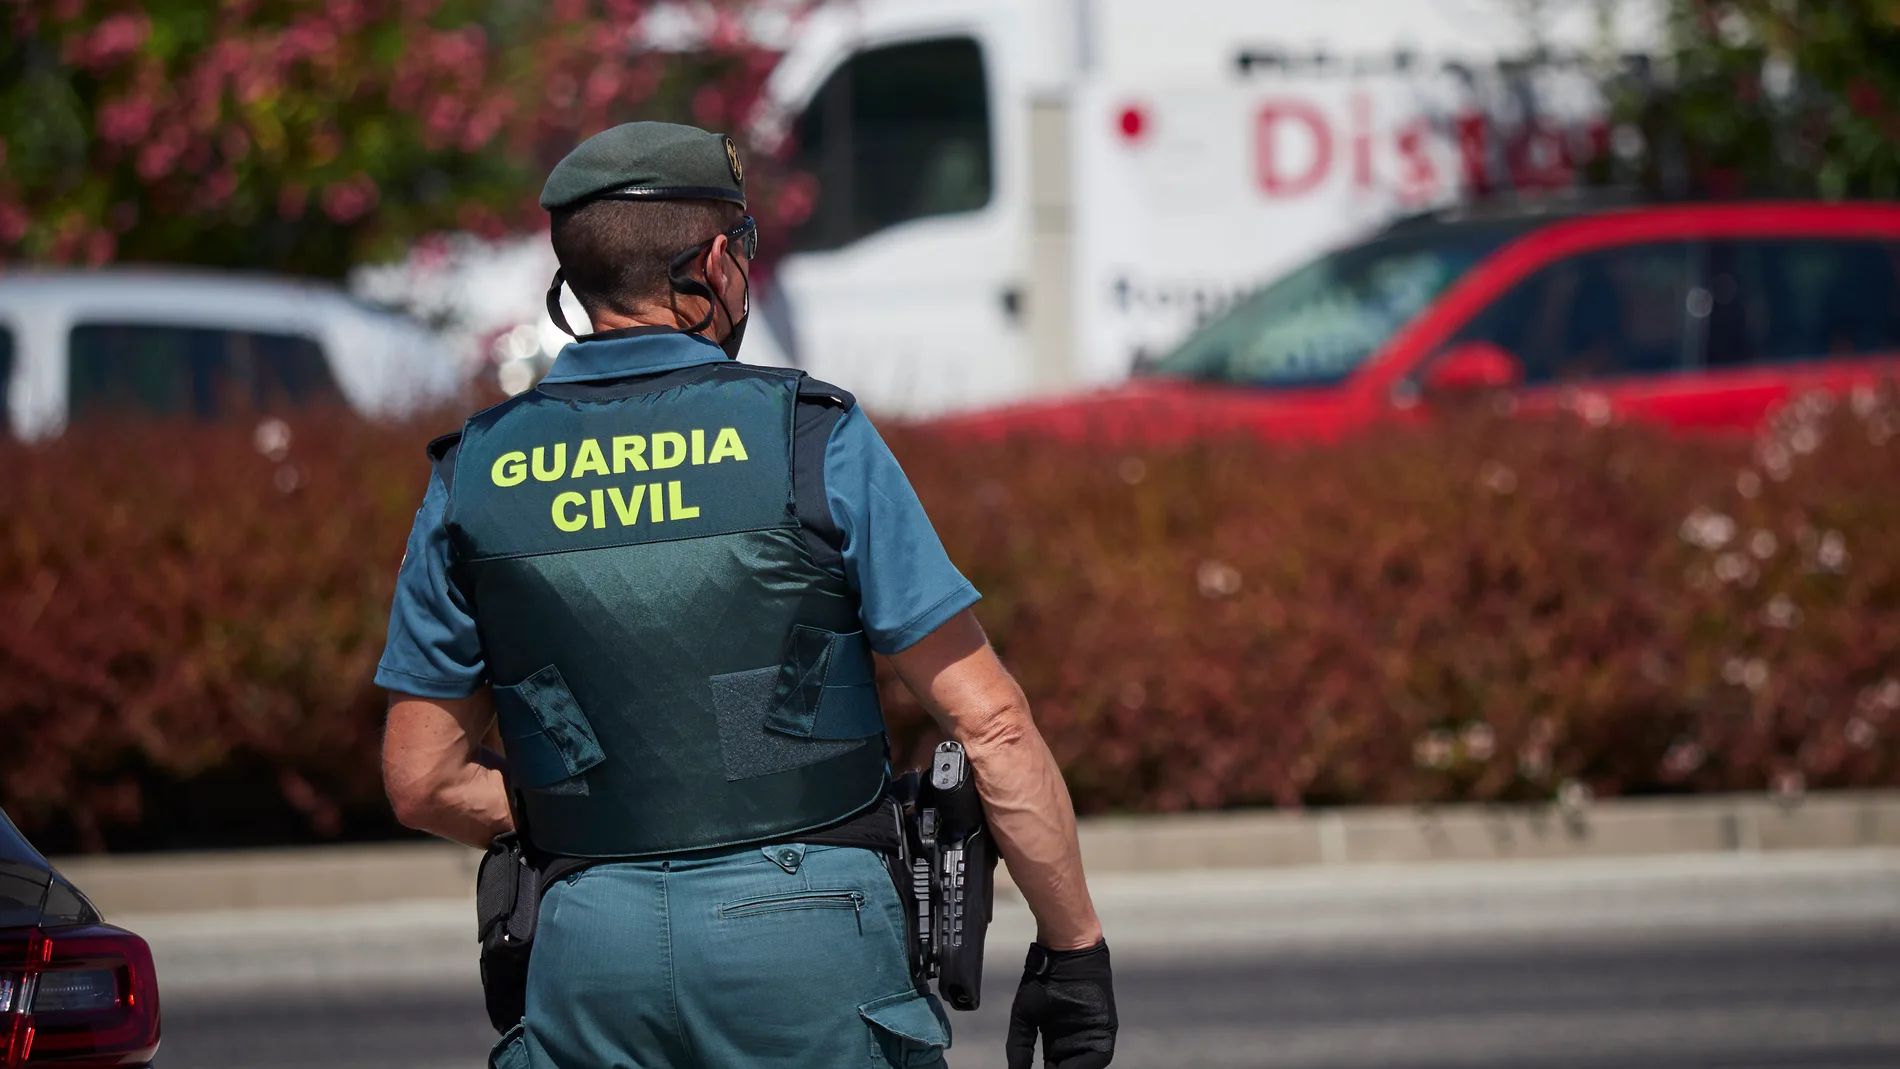 La Guardia Civil busca al tercer individuo que participó en la violación